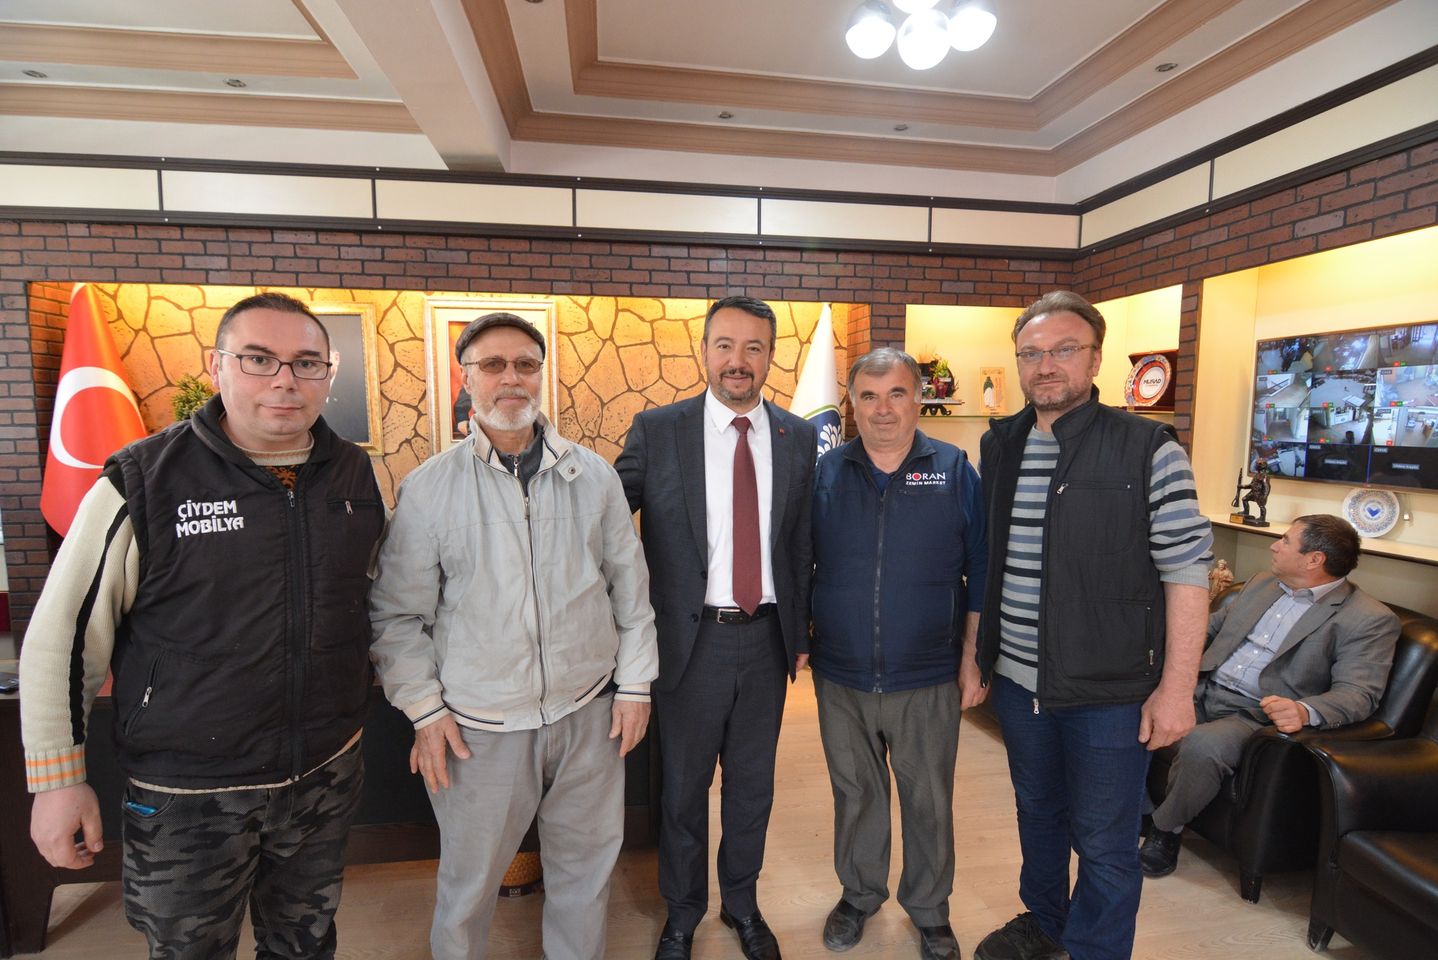 Sandıklı'da Yeni Belediye Başkanı Adnan Öztaş'a Yoğun İlgi ve Destek